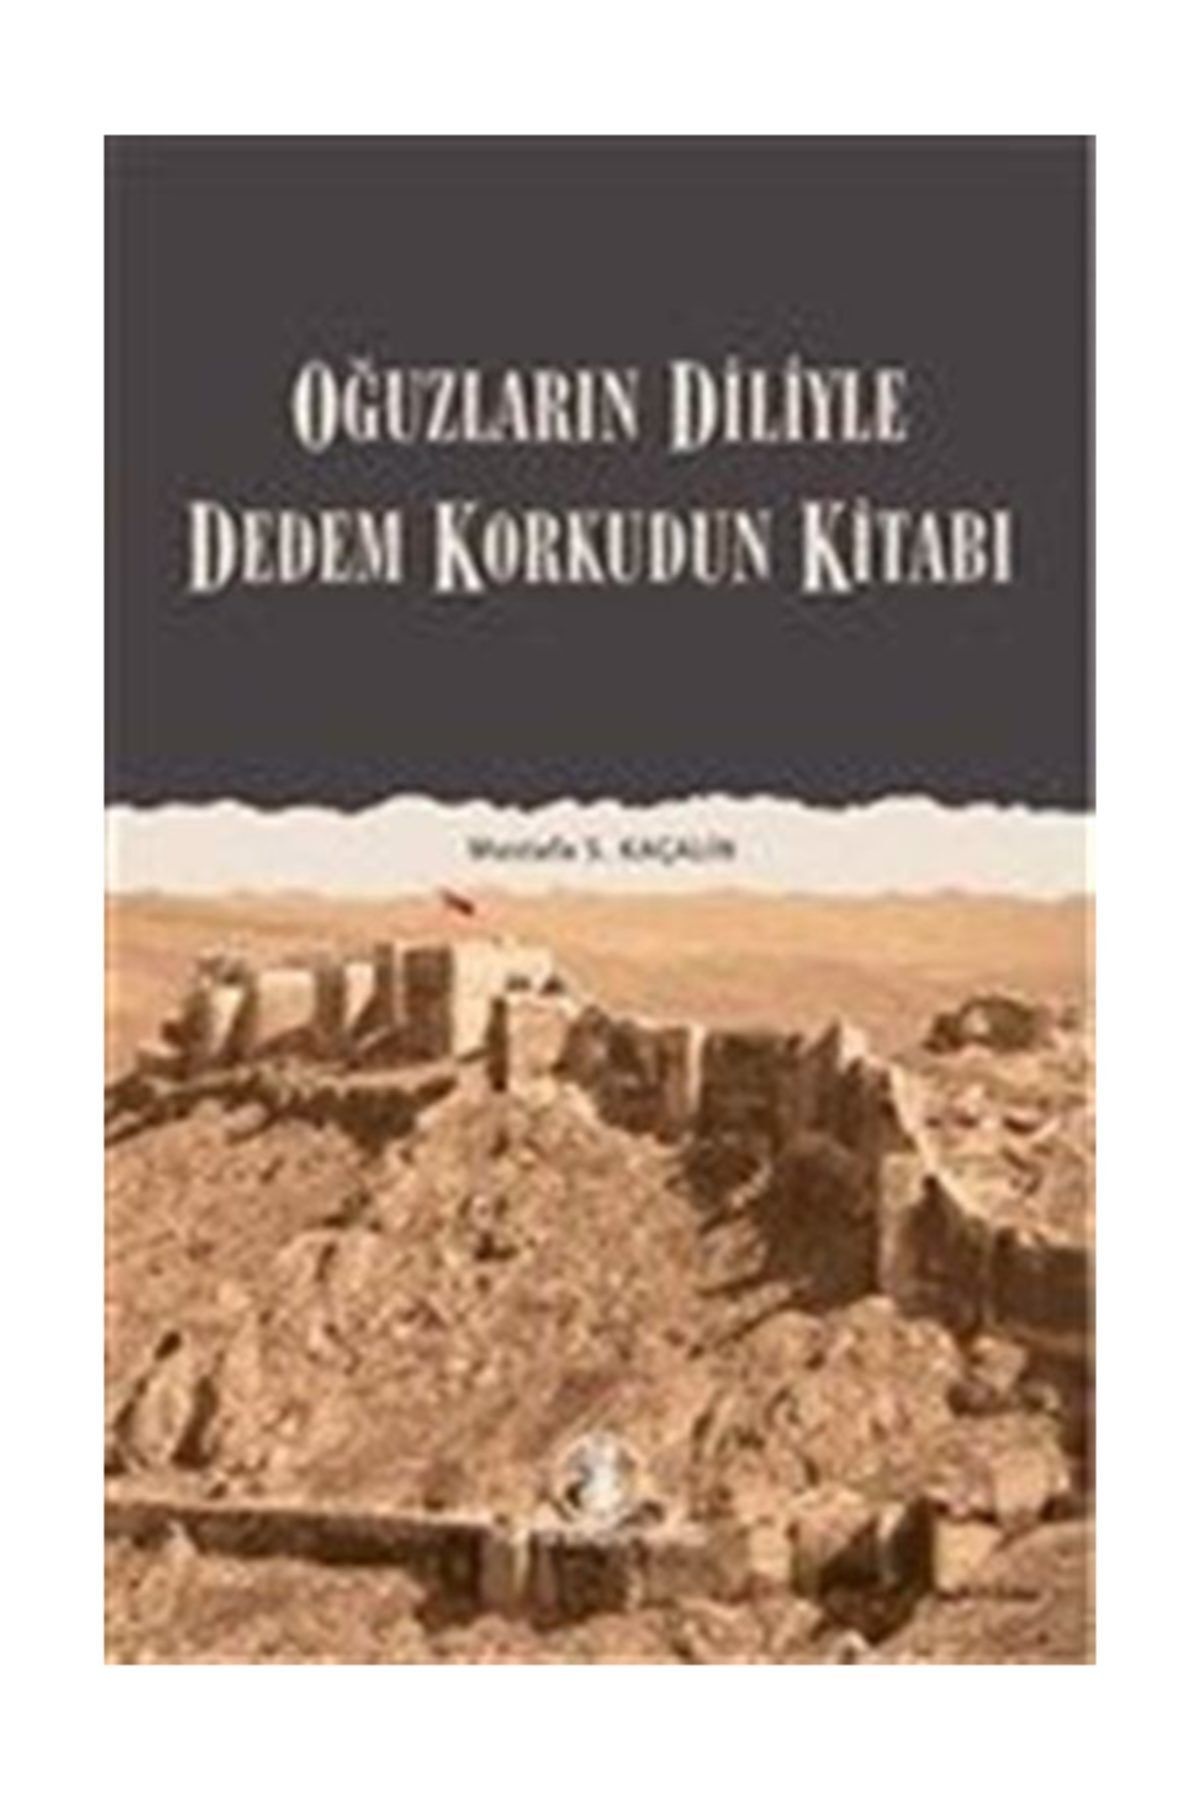 Türk Dil Kurumu Yayınları Oğuzların Diliyle Dedem Korkudun Kitabı Mustafa S. Kaçalin - Mustafa S. Kaçalin